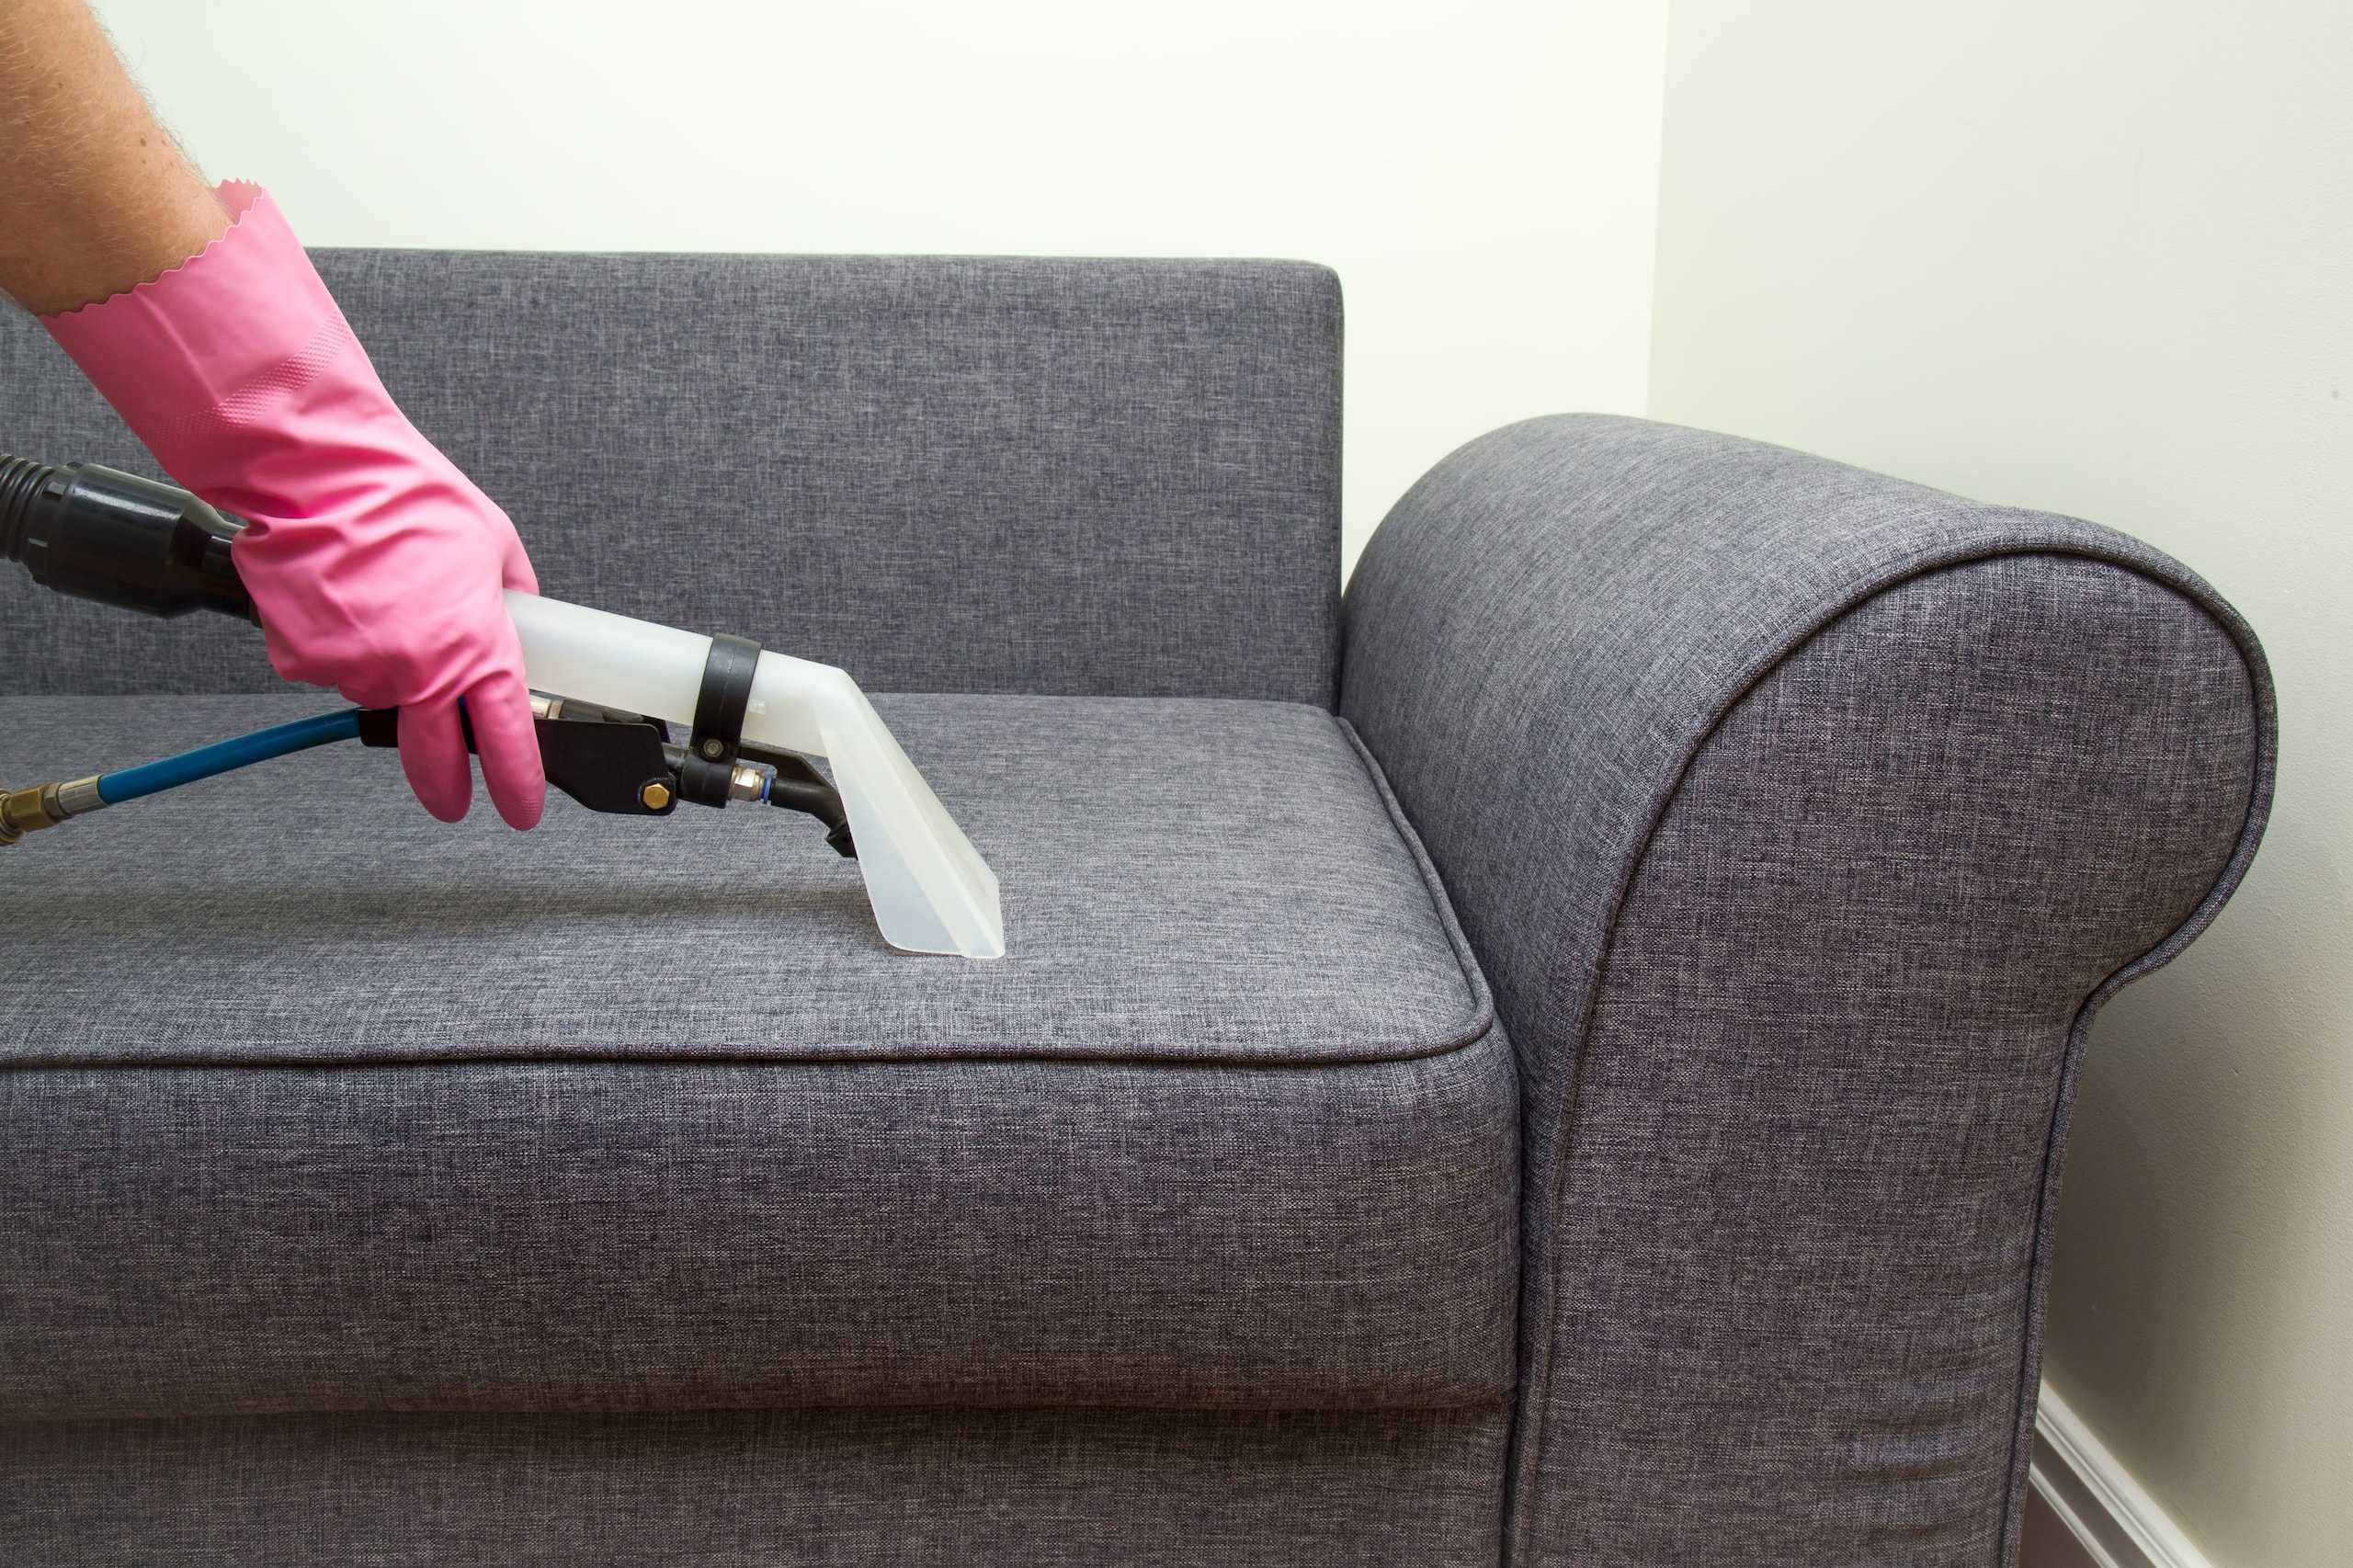 Обзор способов и средств для чистки обивки дивана в домашних условиях